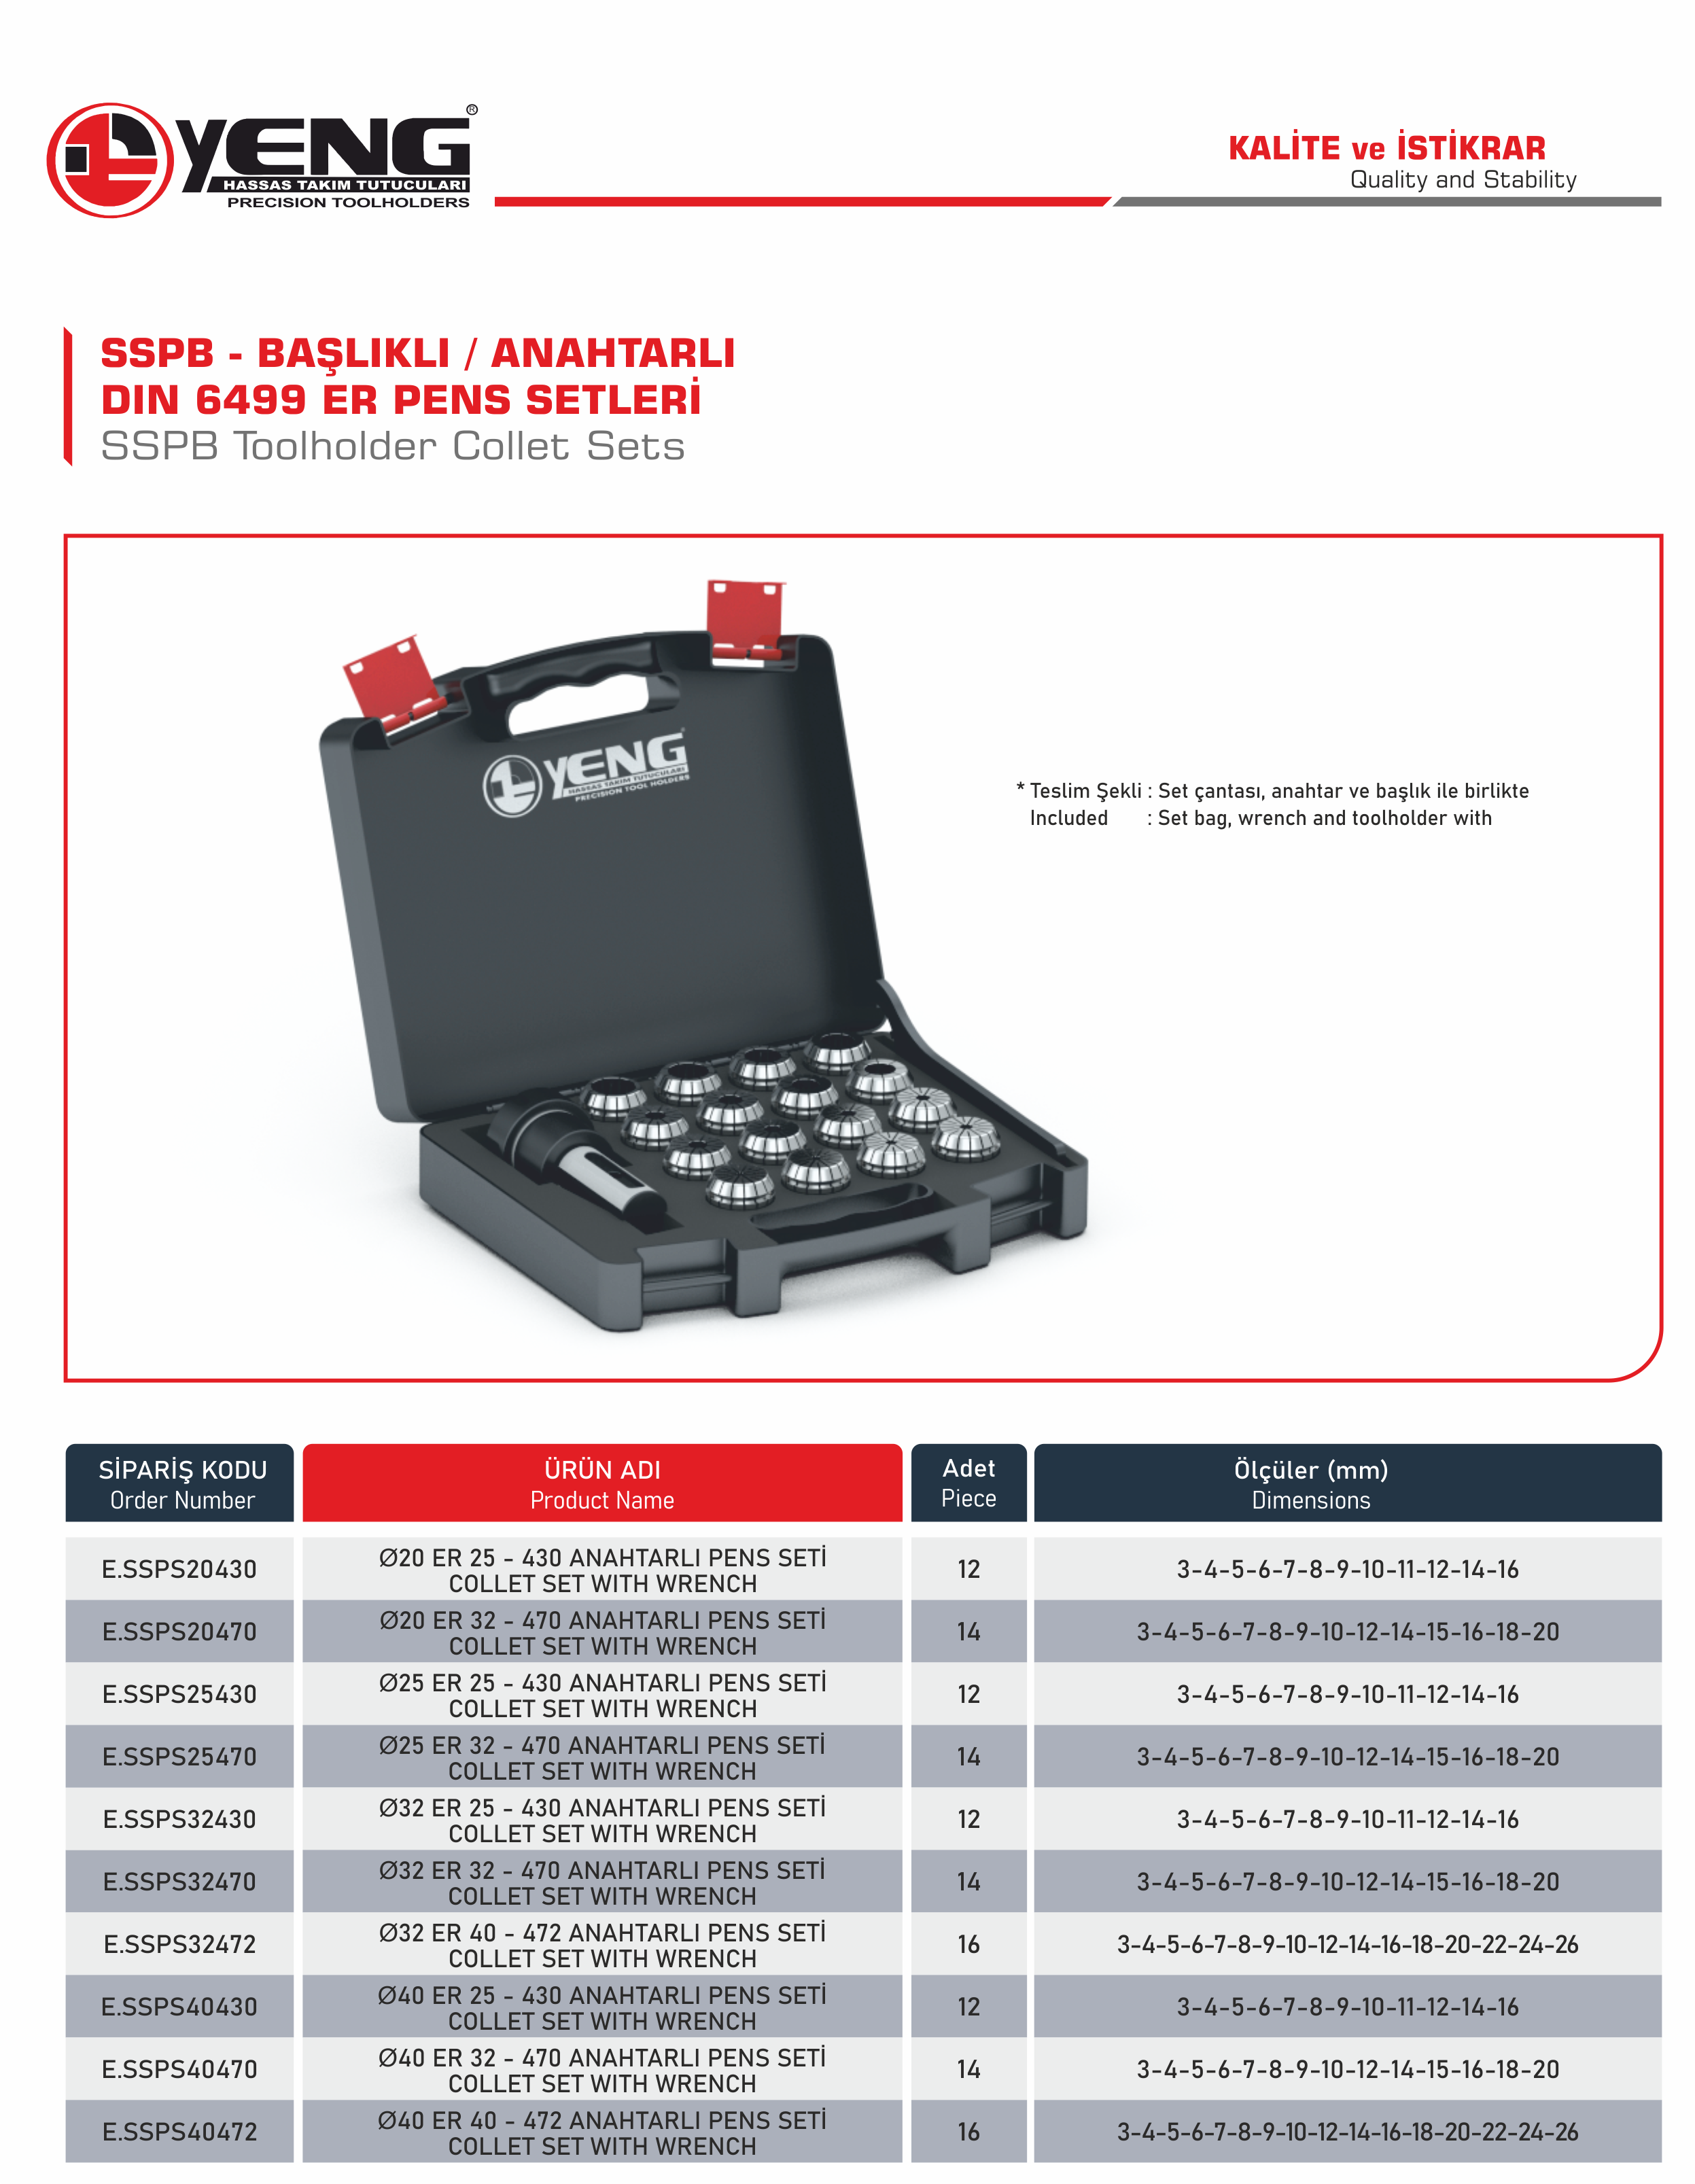 SSPB Başlıklı - Anahtarlı Pens Setleri / DIN 6499 ER